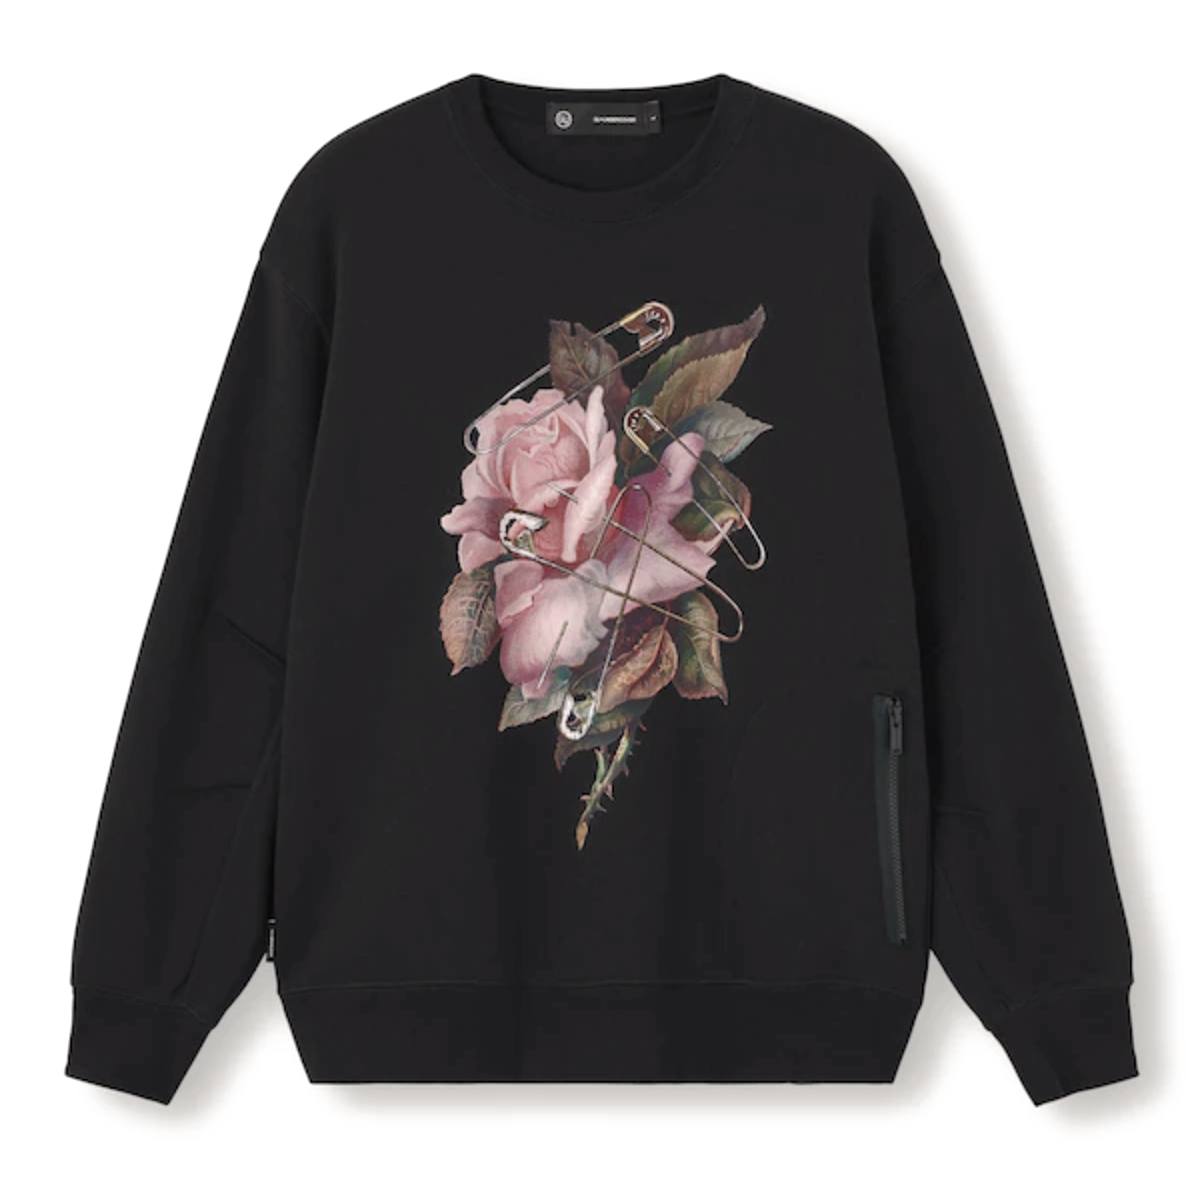 Uniqlo GU x Undercover Flower Graphic Sweatshirt Black Men's